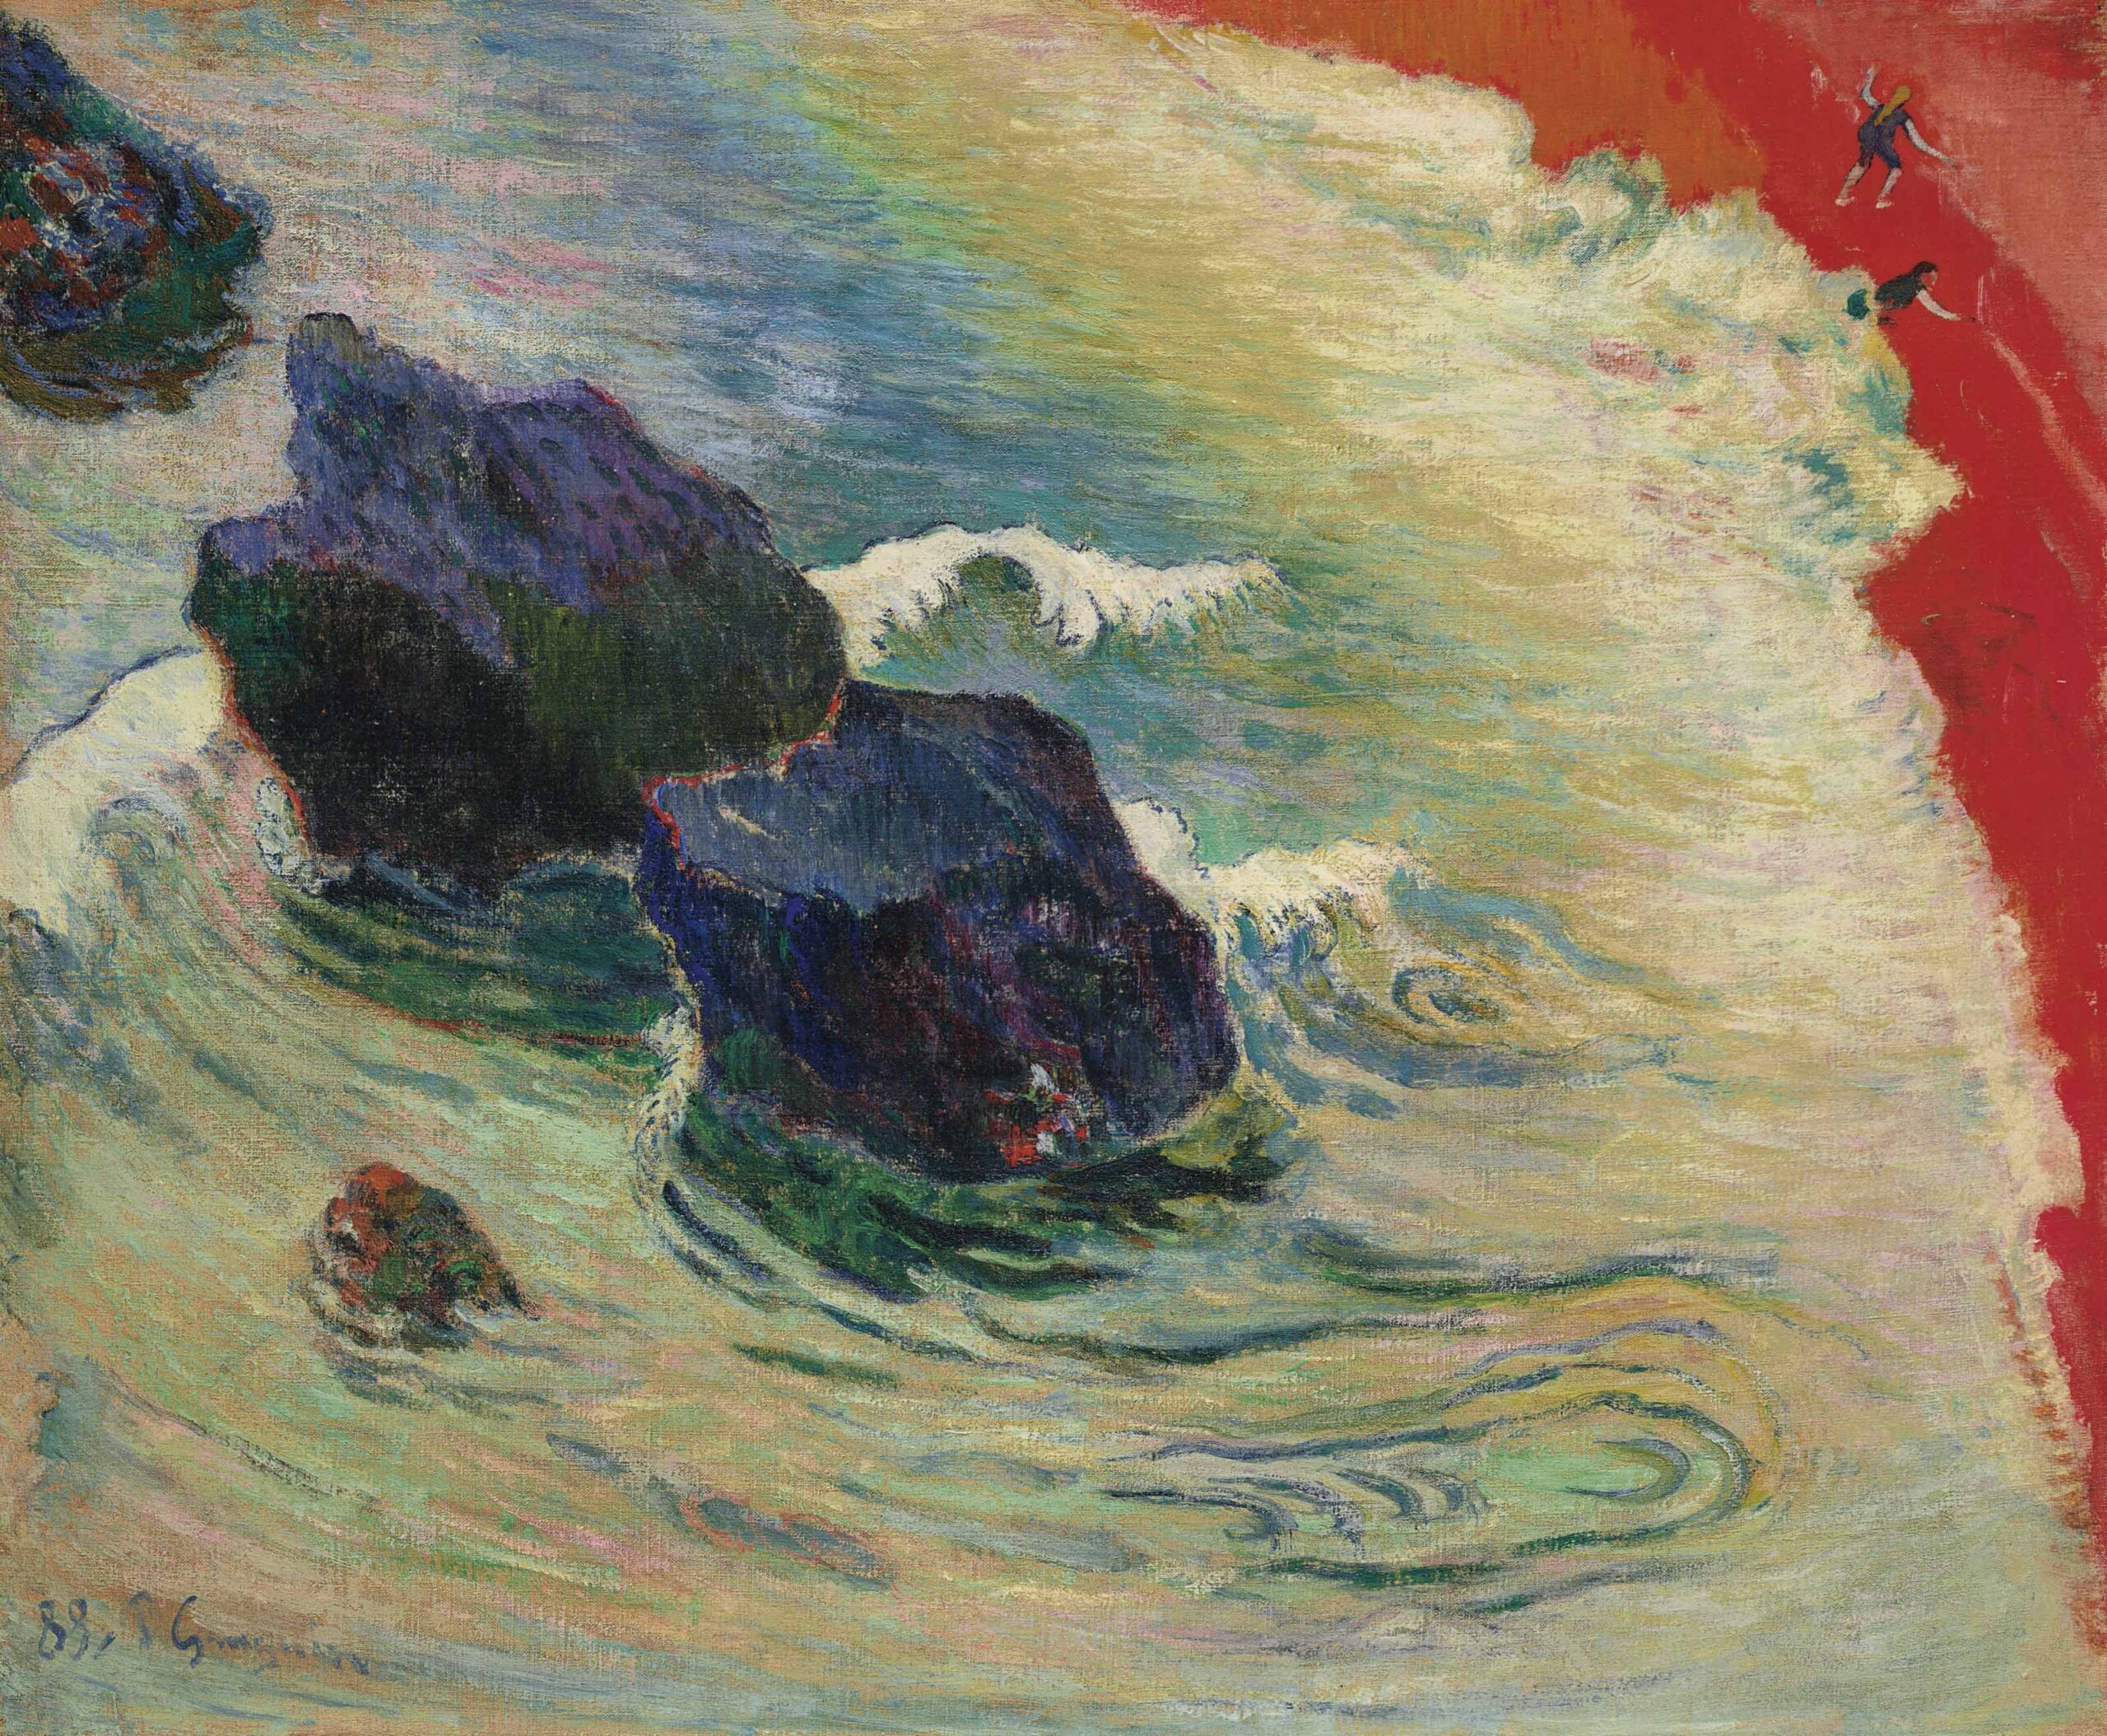 La Vague (The Wave) by Paul Gauguin